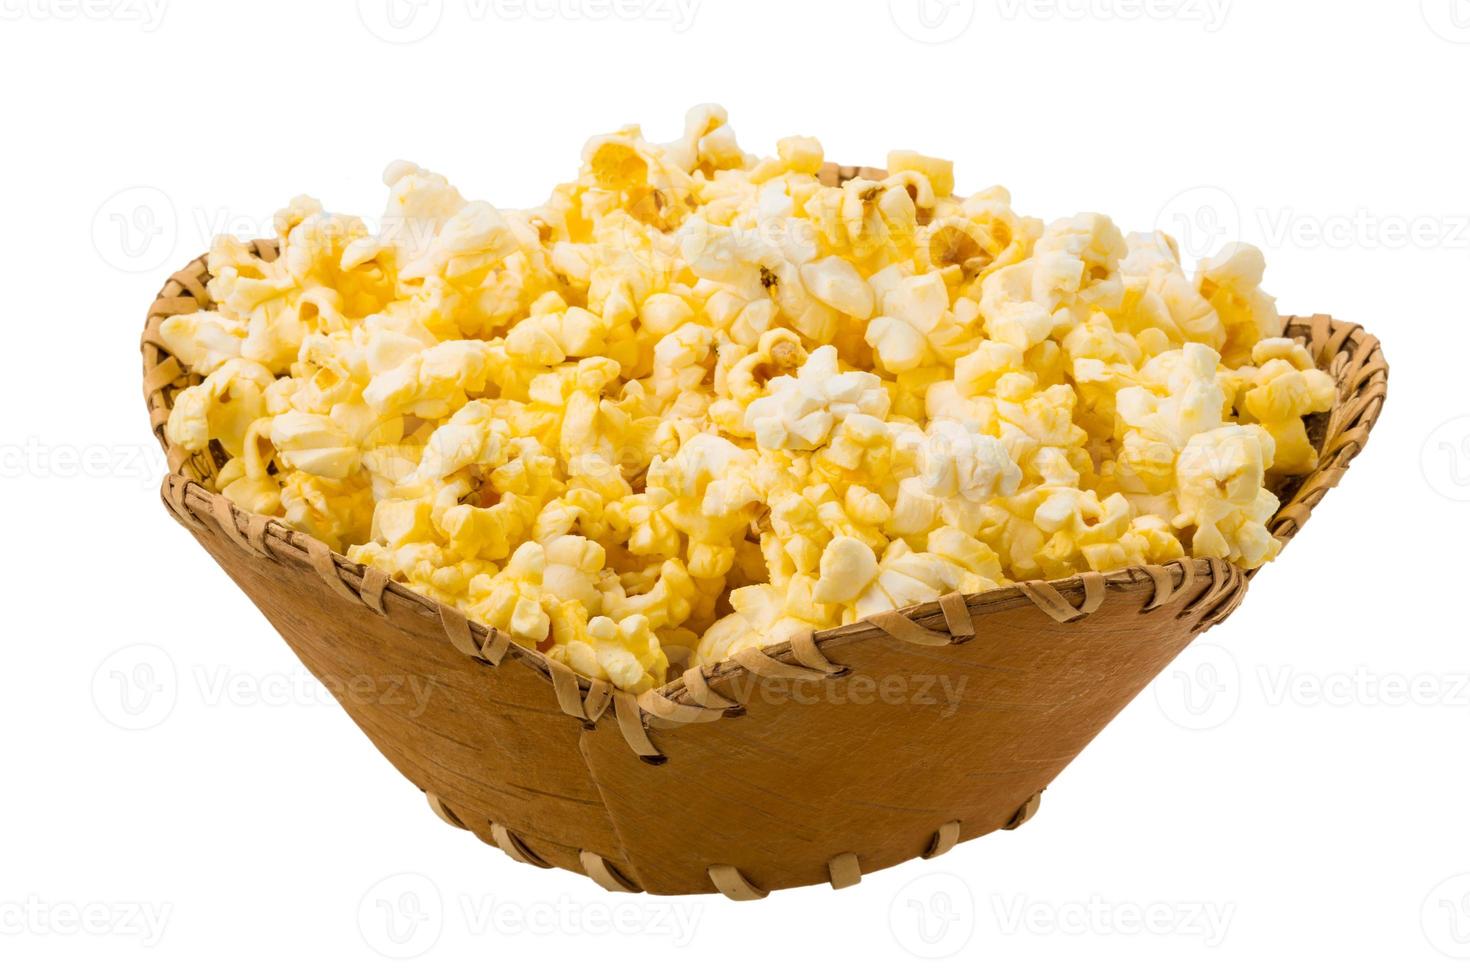 popcorn in een mand op witte achtergrond foto